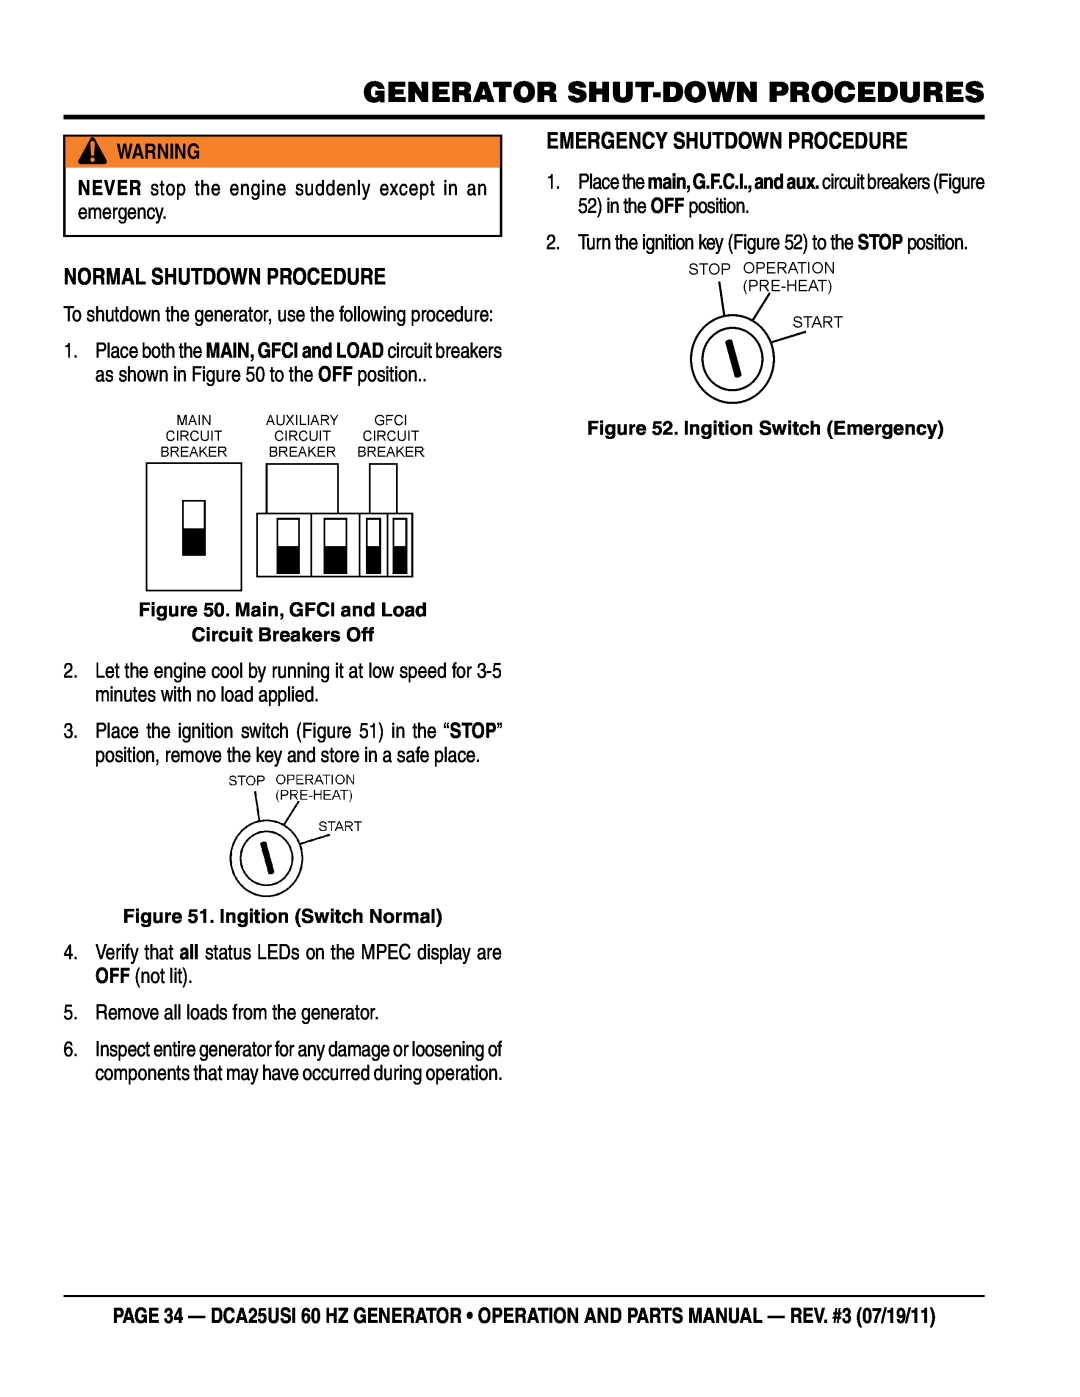 Multiquip DCA25USI manual Generator Shut-Down Procedures, Normal Shutdown Procedure, Emergency Shutdown Procedure 